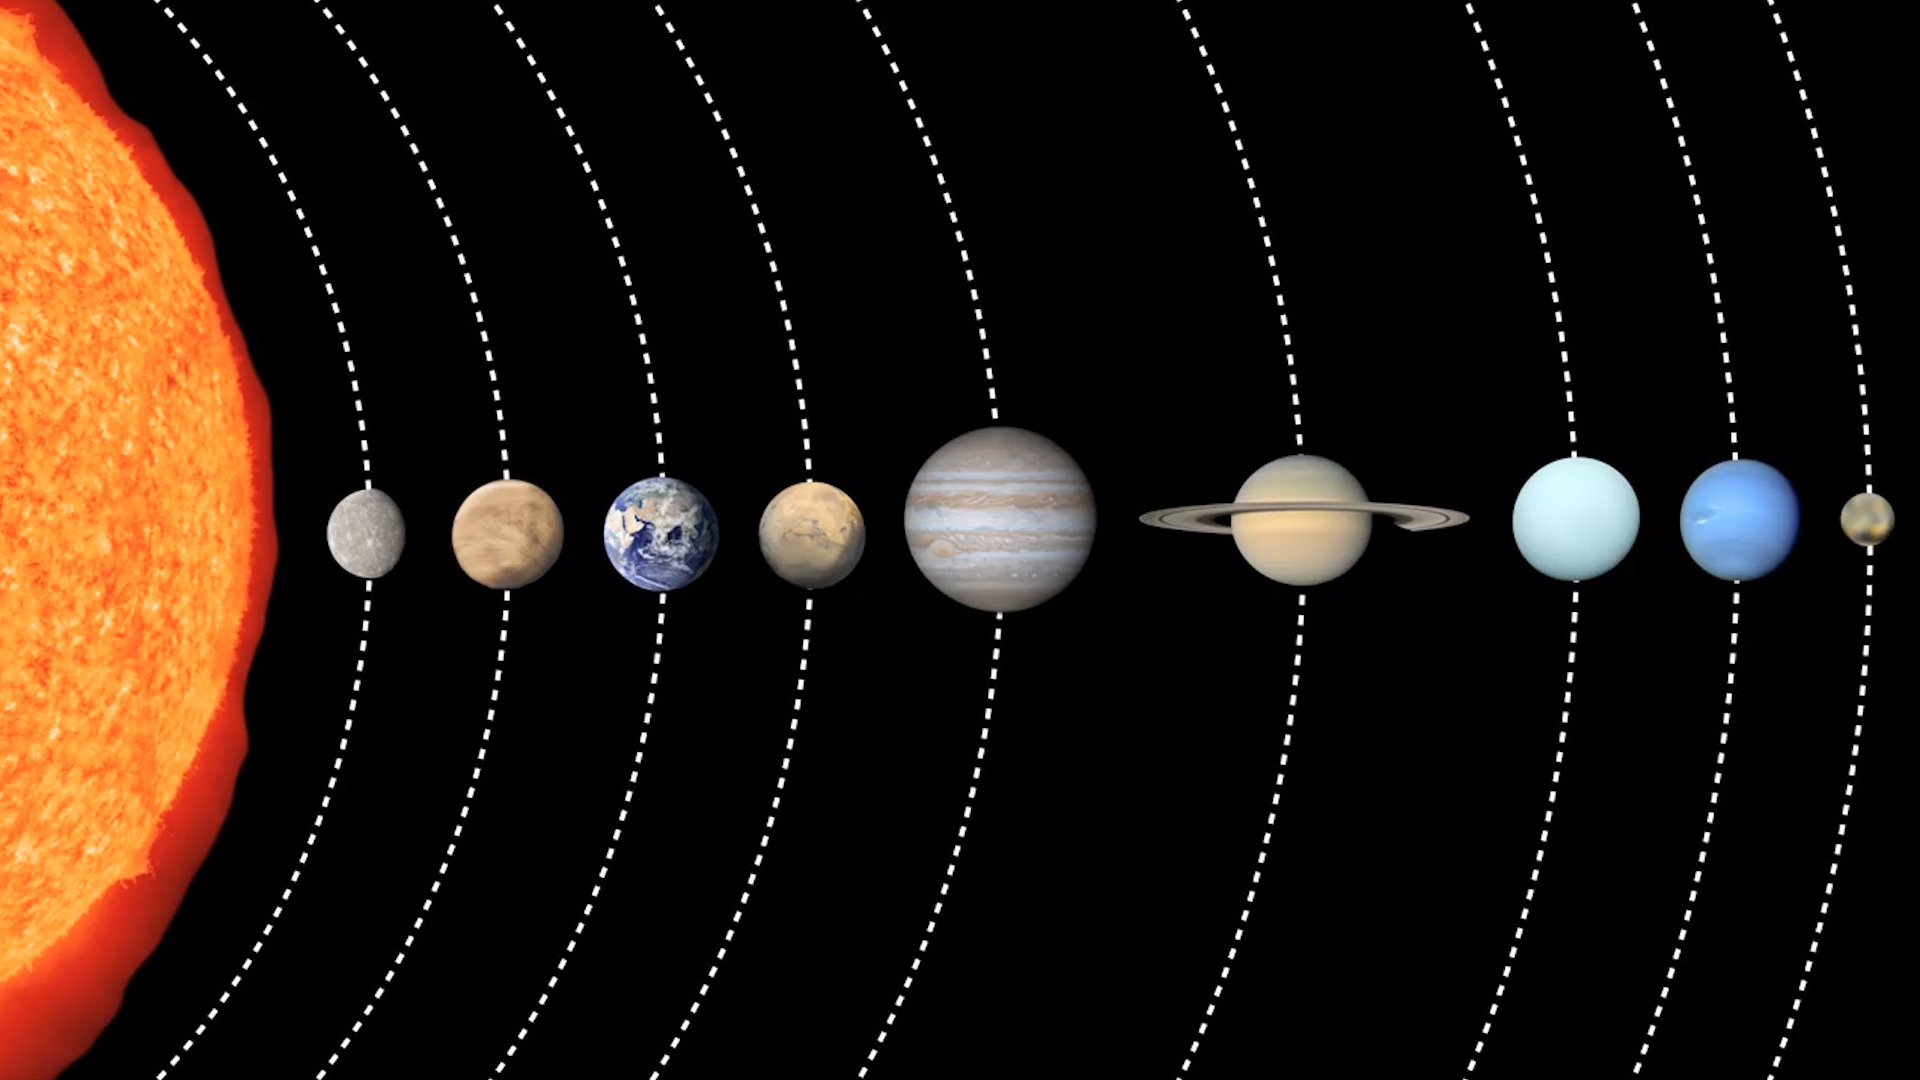 冥王星为什么不算九大行星之一了?因为个子小,离得远?